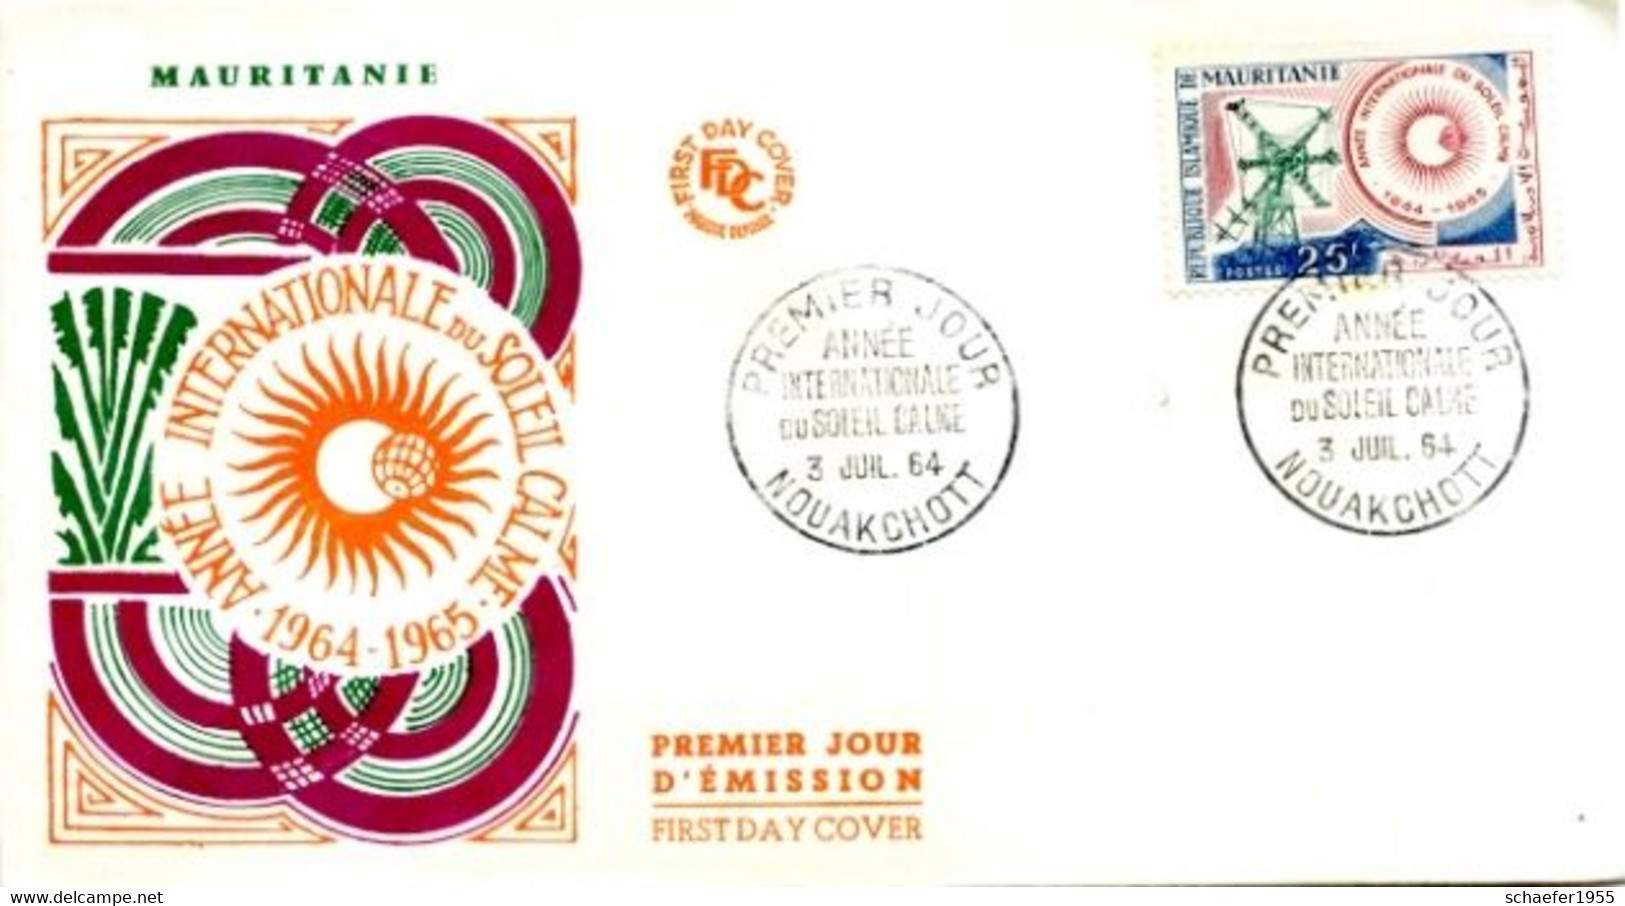 Mauritanie, Mauretanien 1964 FDC + Stamp Soleil Calme - Africa